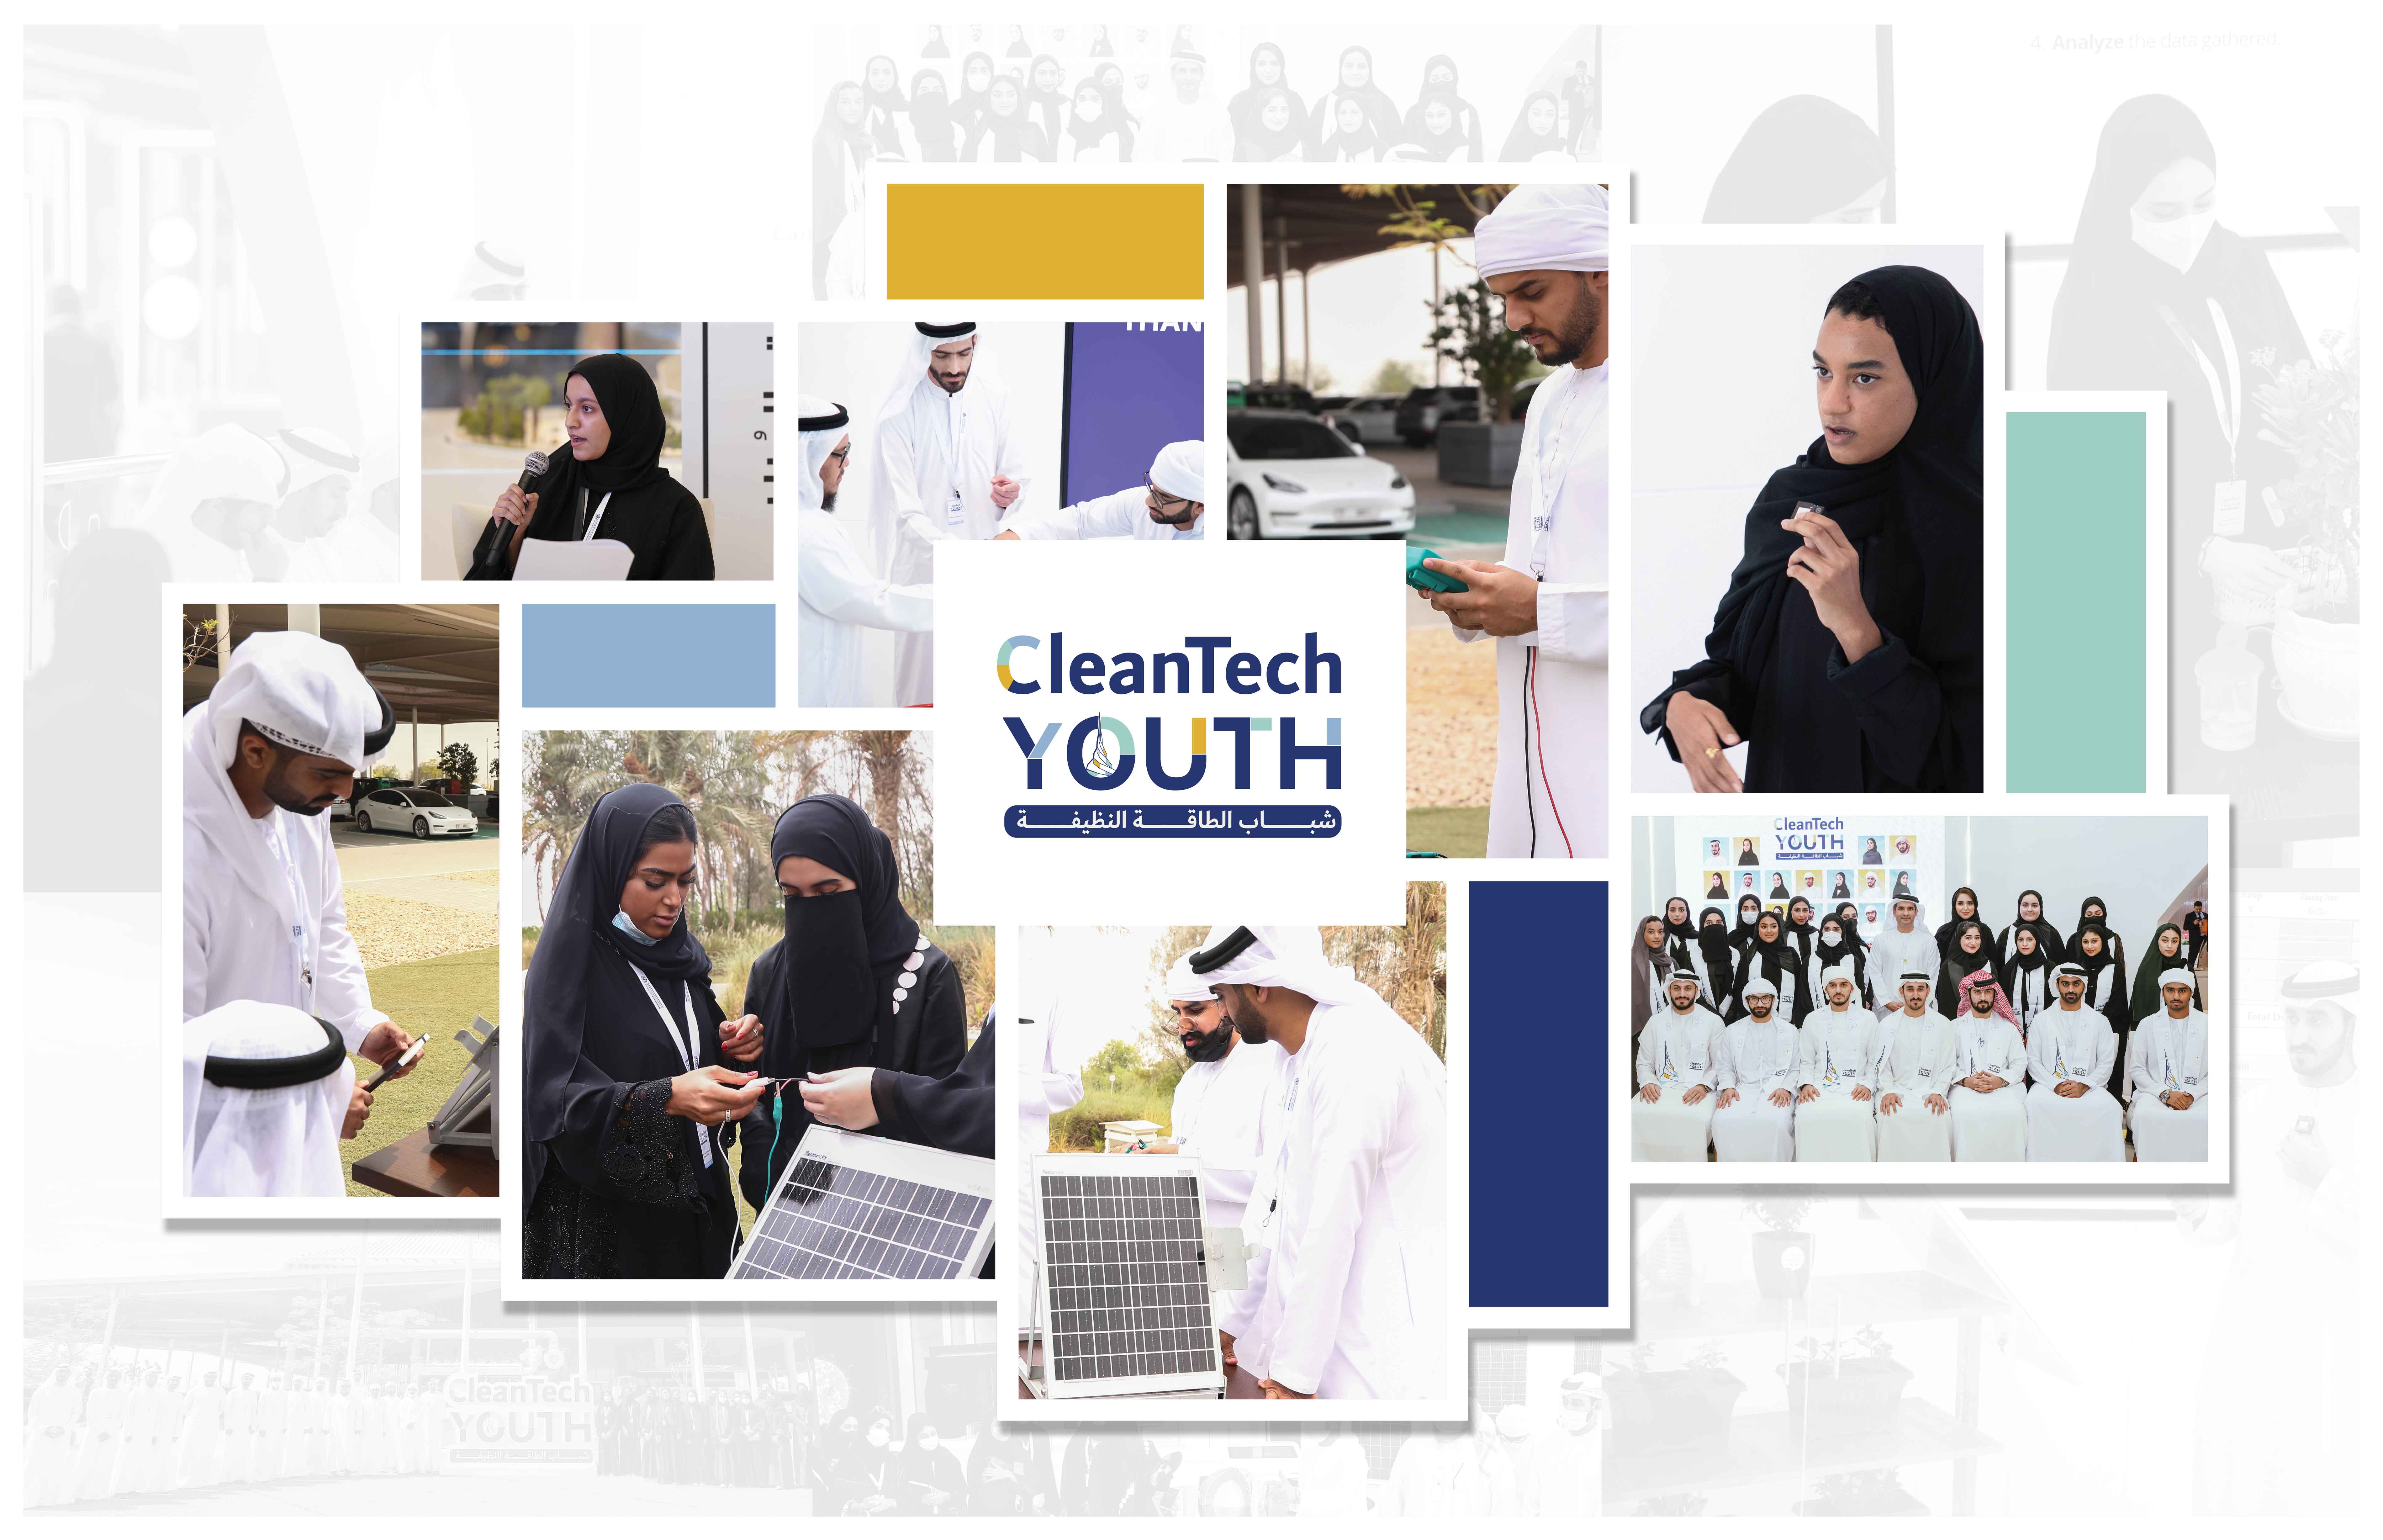 برنامج "شباب الطاقة النظيفة" من هيئة كهرباء ومياه دبي يستقبل طلبات المشاركة من طلاب وخريجي الجامعات المحلية